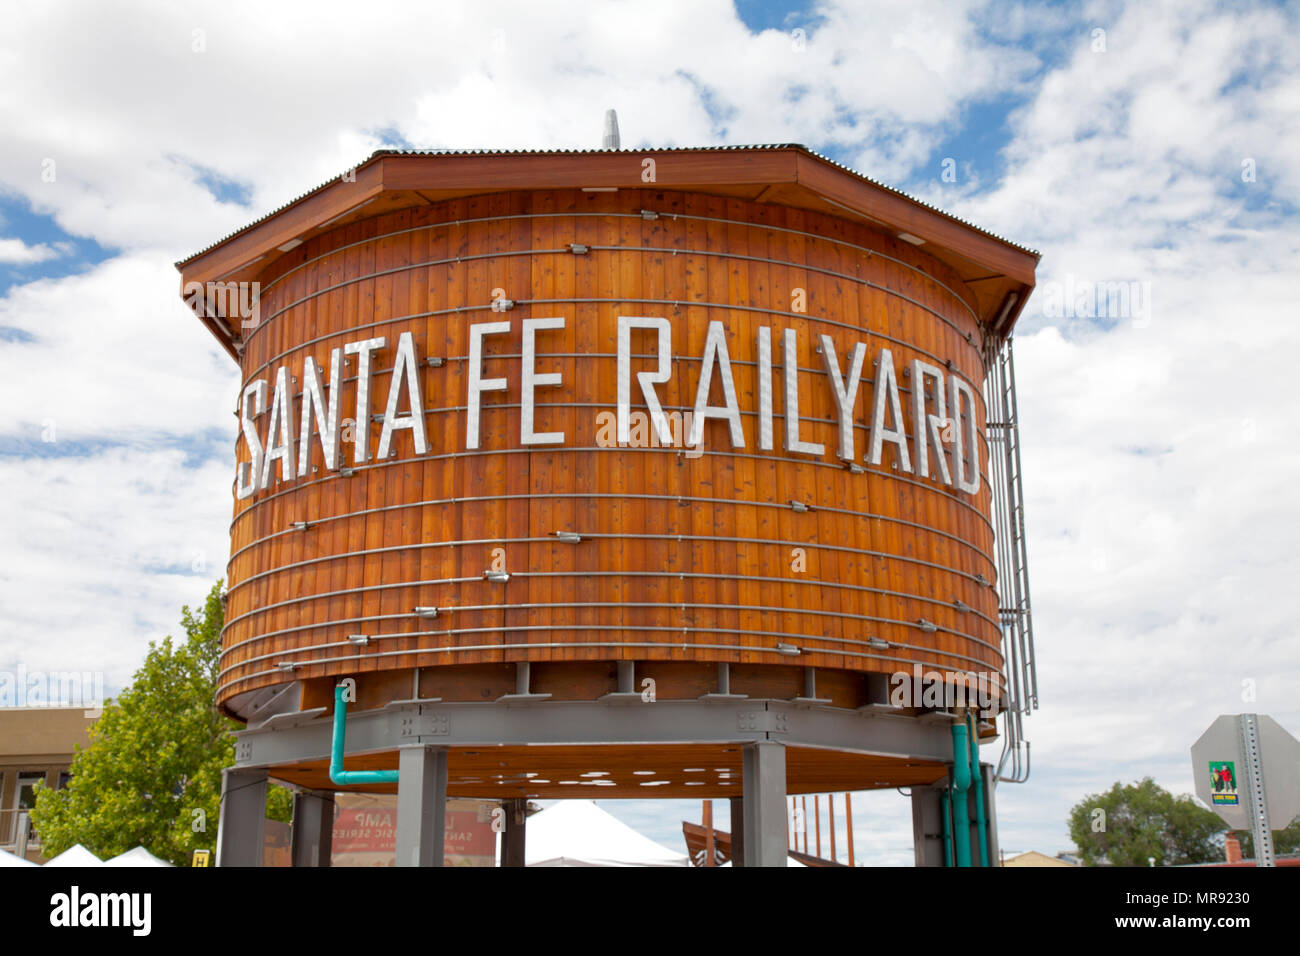 Ce réservoir d'eau en bois vintage sert de repère et signe pour un divertissement populaire de Santa Fe district, les terrains ferroviaires. Les marchés de producteurs deux fois par semaine Banque D'Images